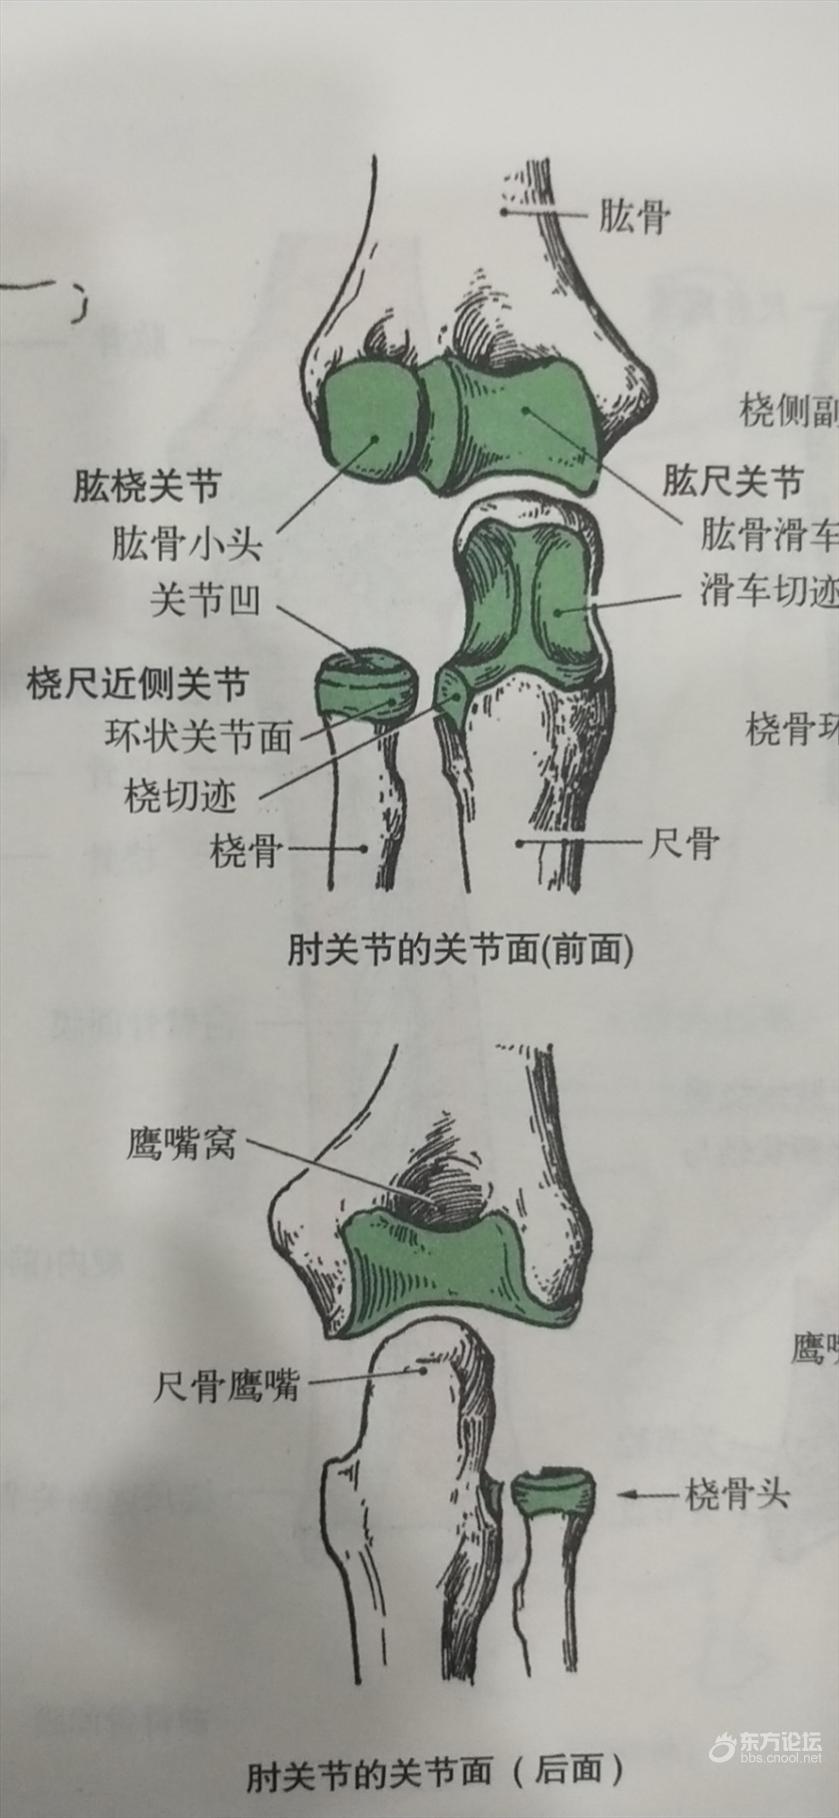 肱尺关节:由肱骨的"滑车"与尺骨的"滑车切迹